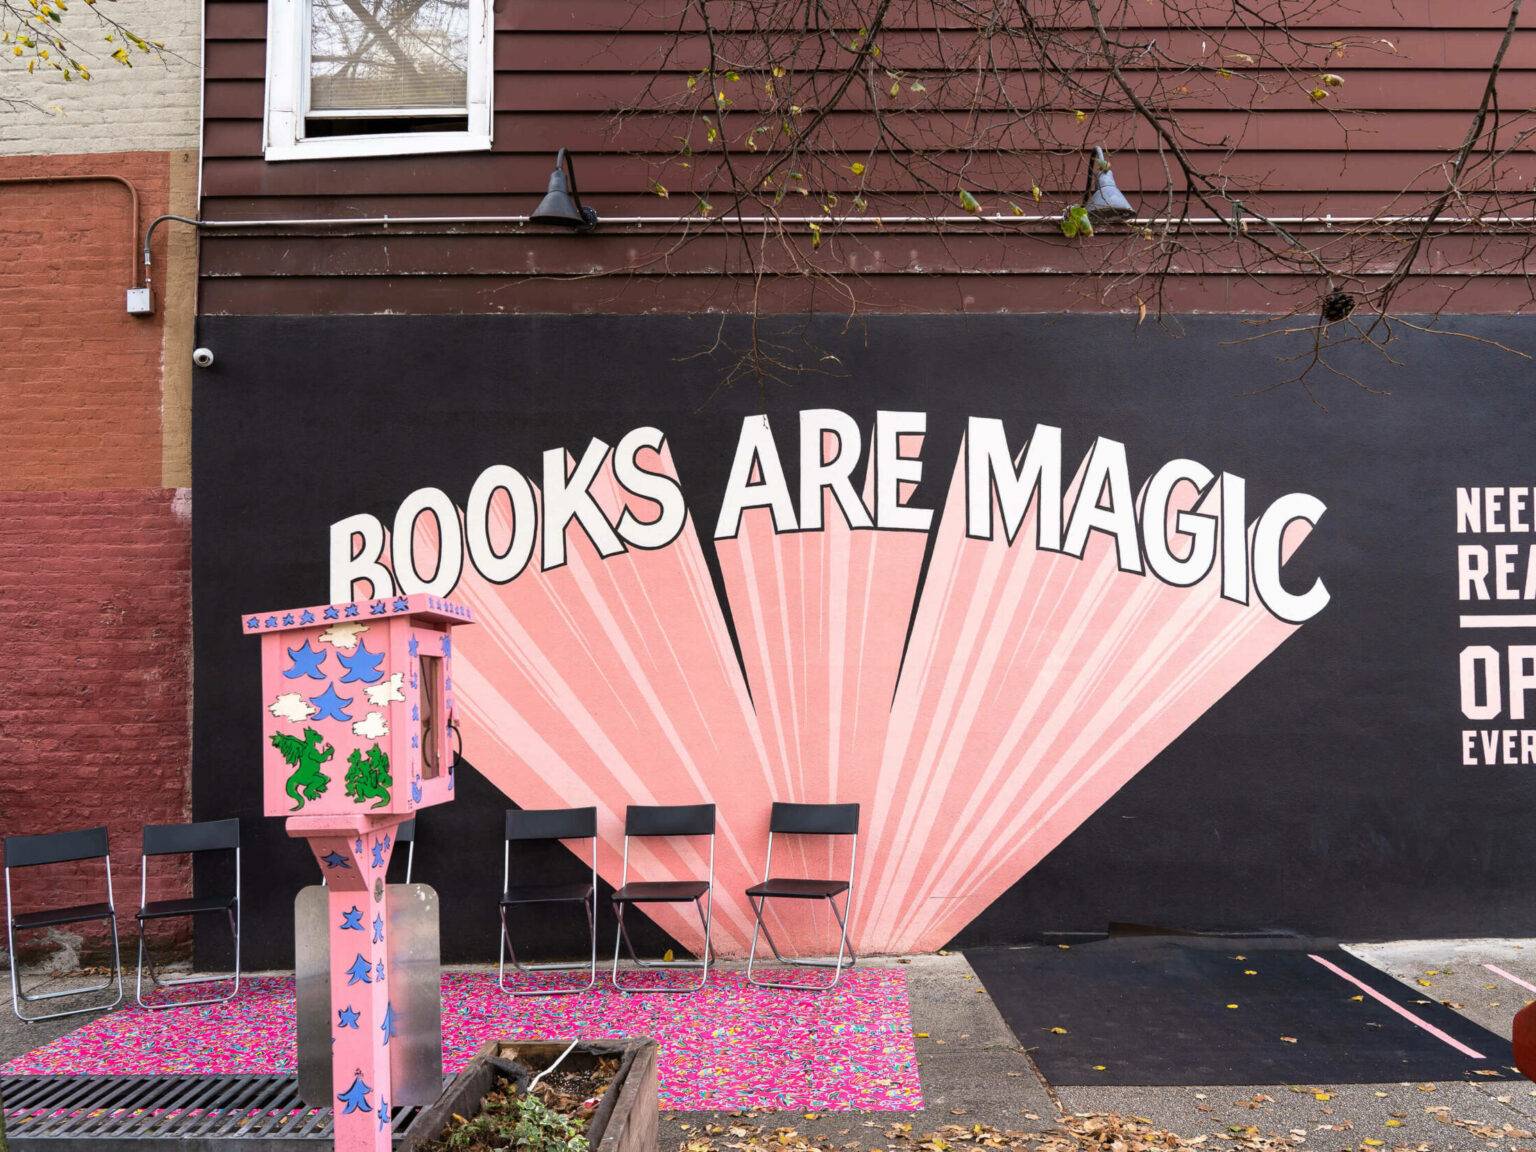 Die Wörter "Books are Magic" als Graffiti auf einer Hauswand in Brooklyn.